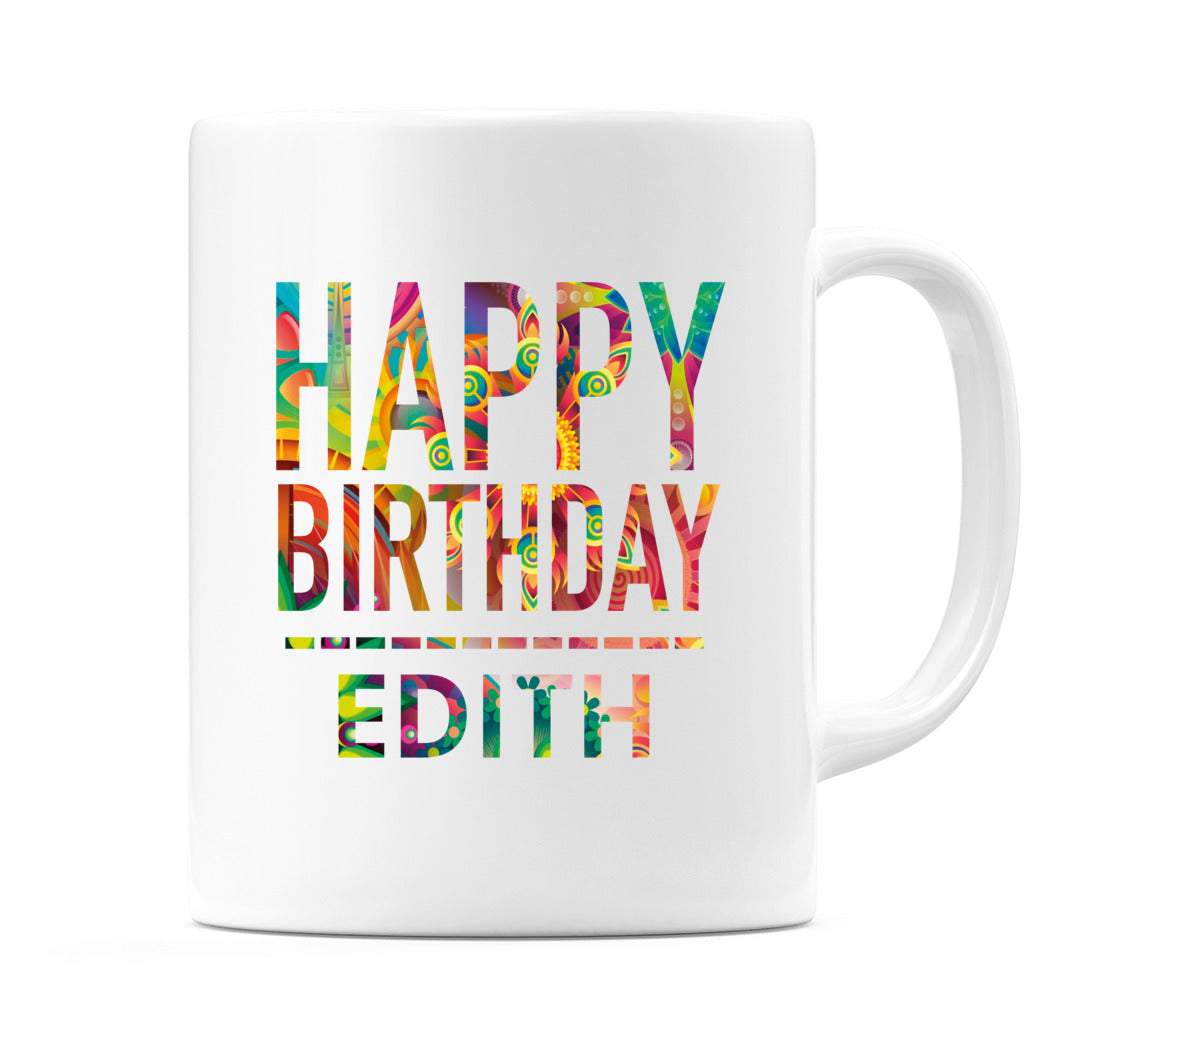 Happy Birthday Edith (Tie Dye Effect) Mug Cup by WeDoMugs